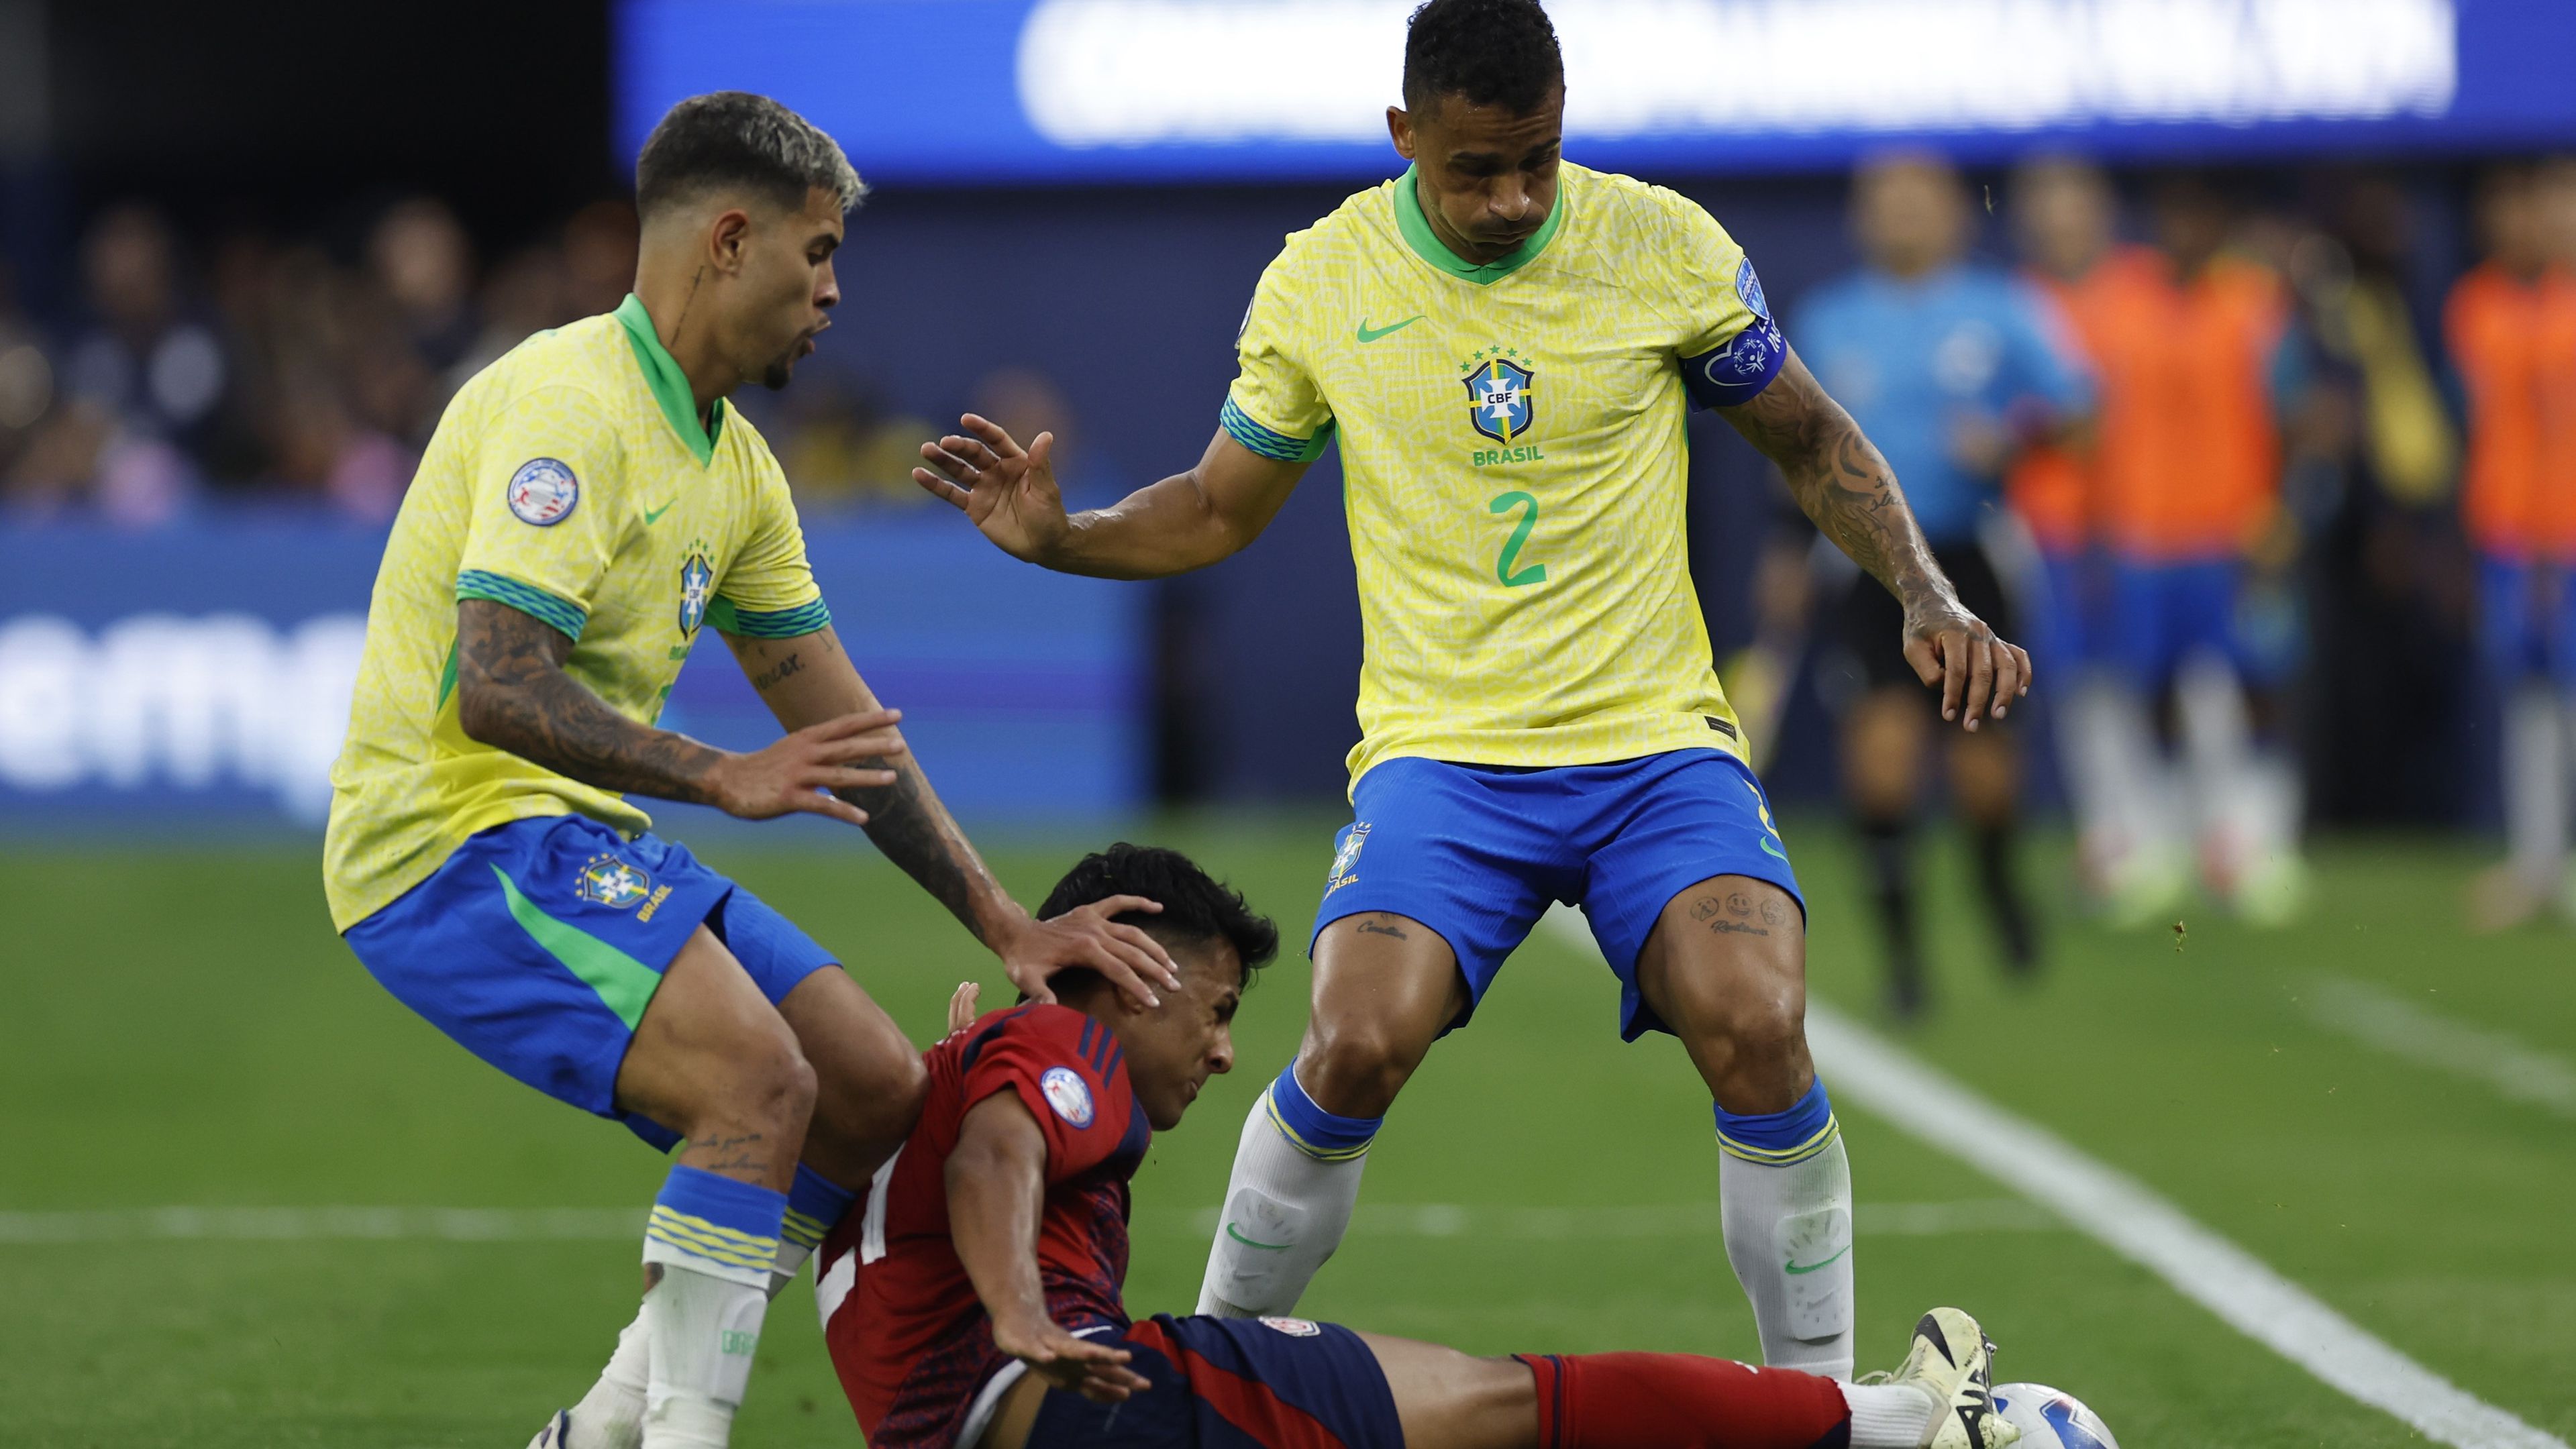 Hiába a sárga mezes brazilok fölénye, Costa Rica kihúzta kapott gól nélkül. (Fotó: Getty Images)